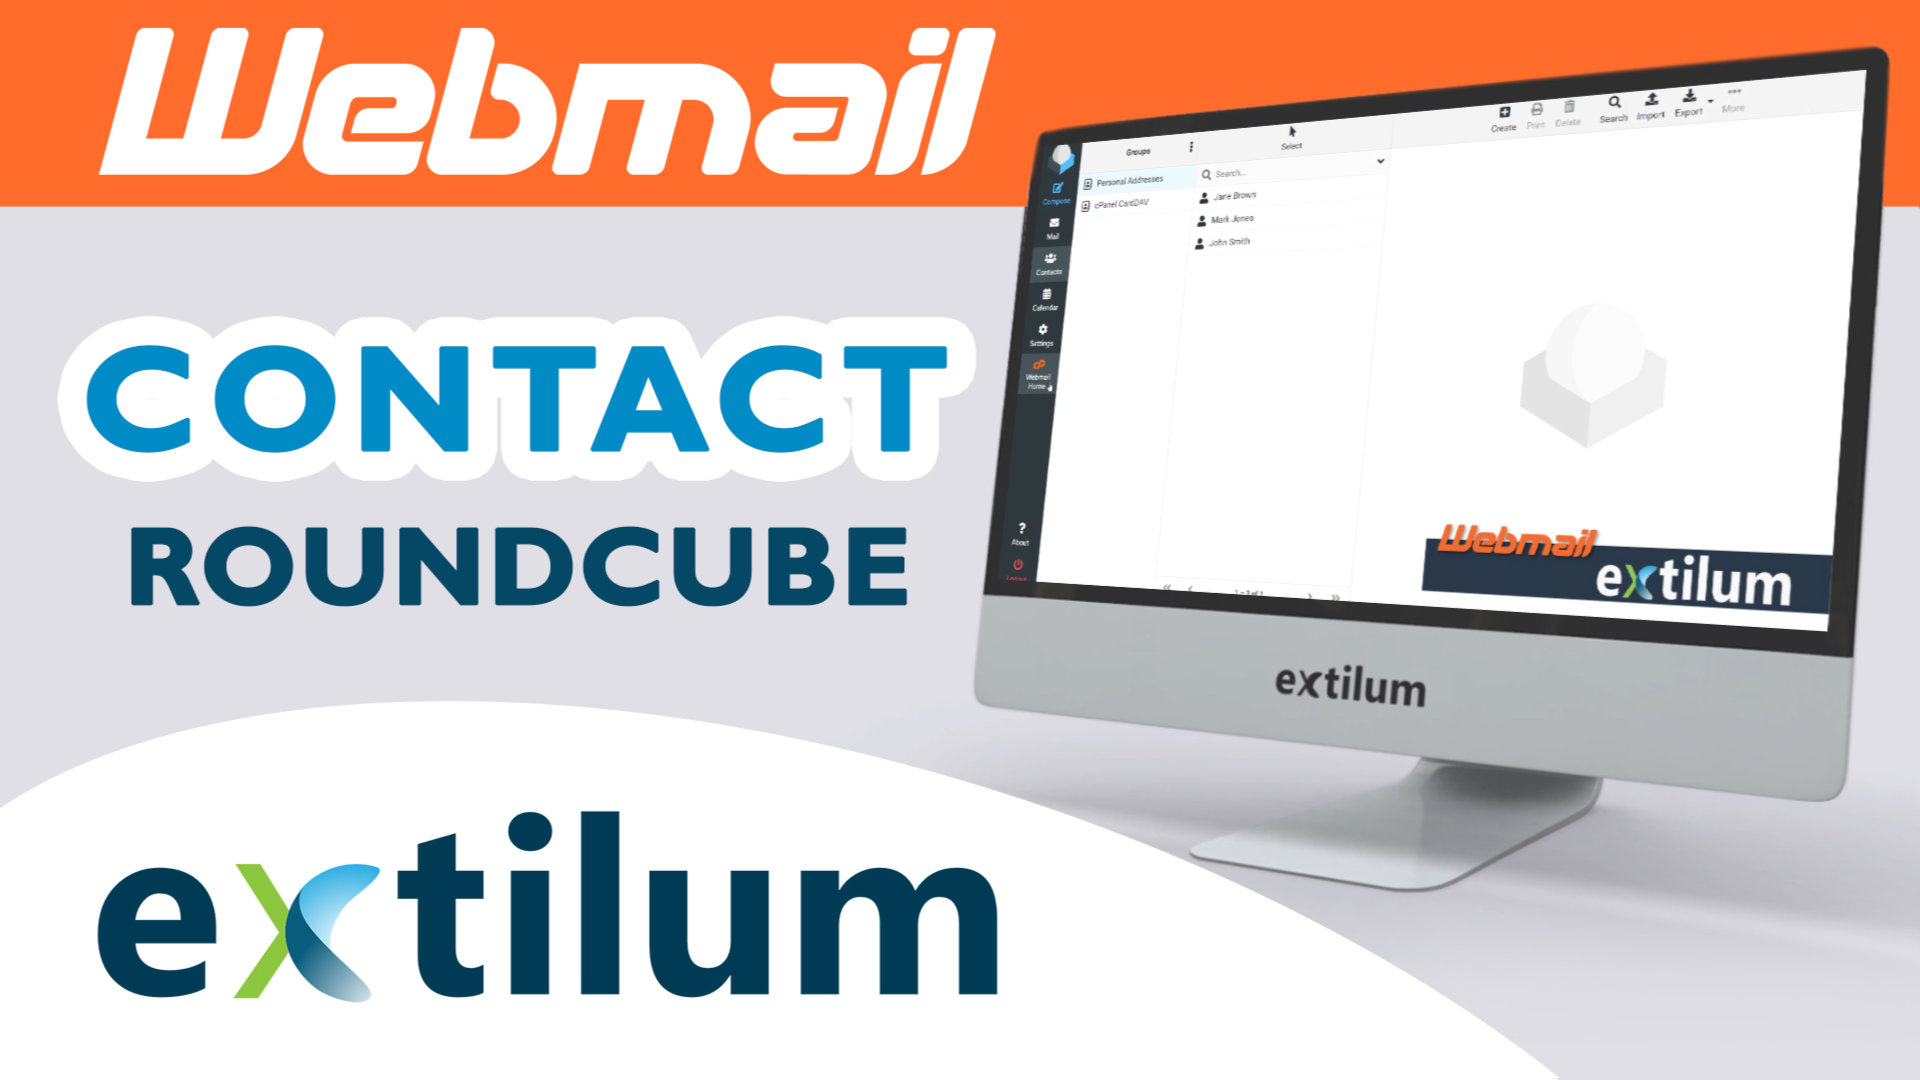 Extilum Webmail - Roundcube contact